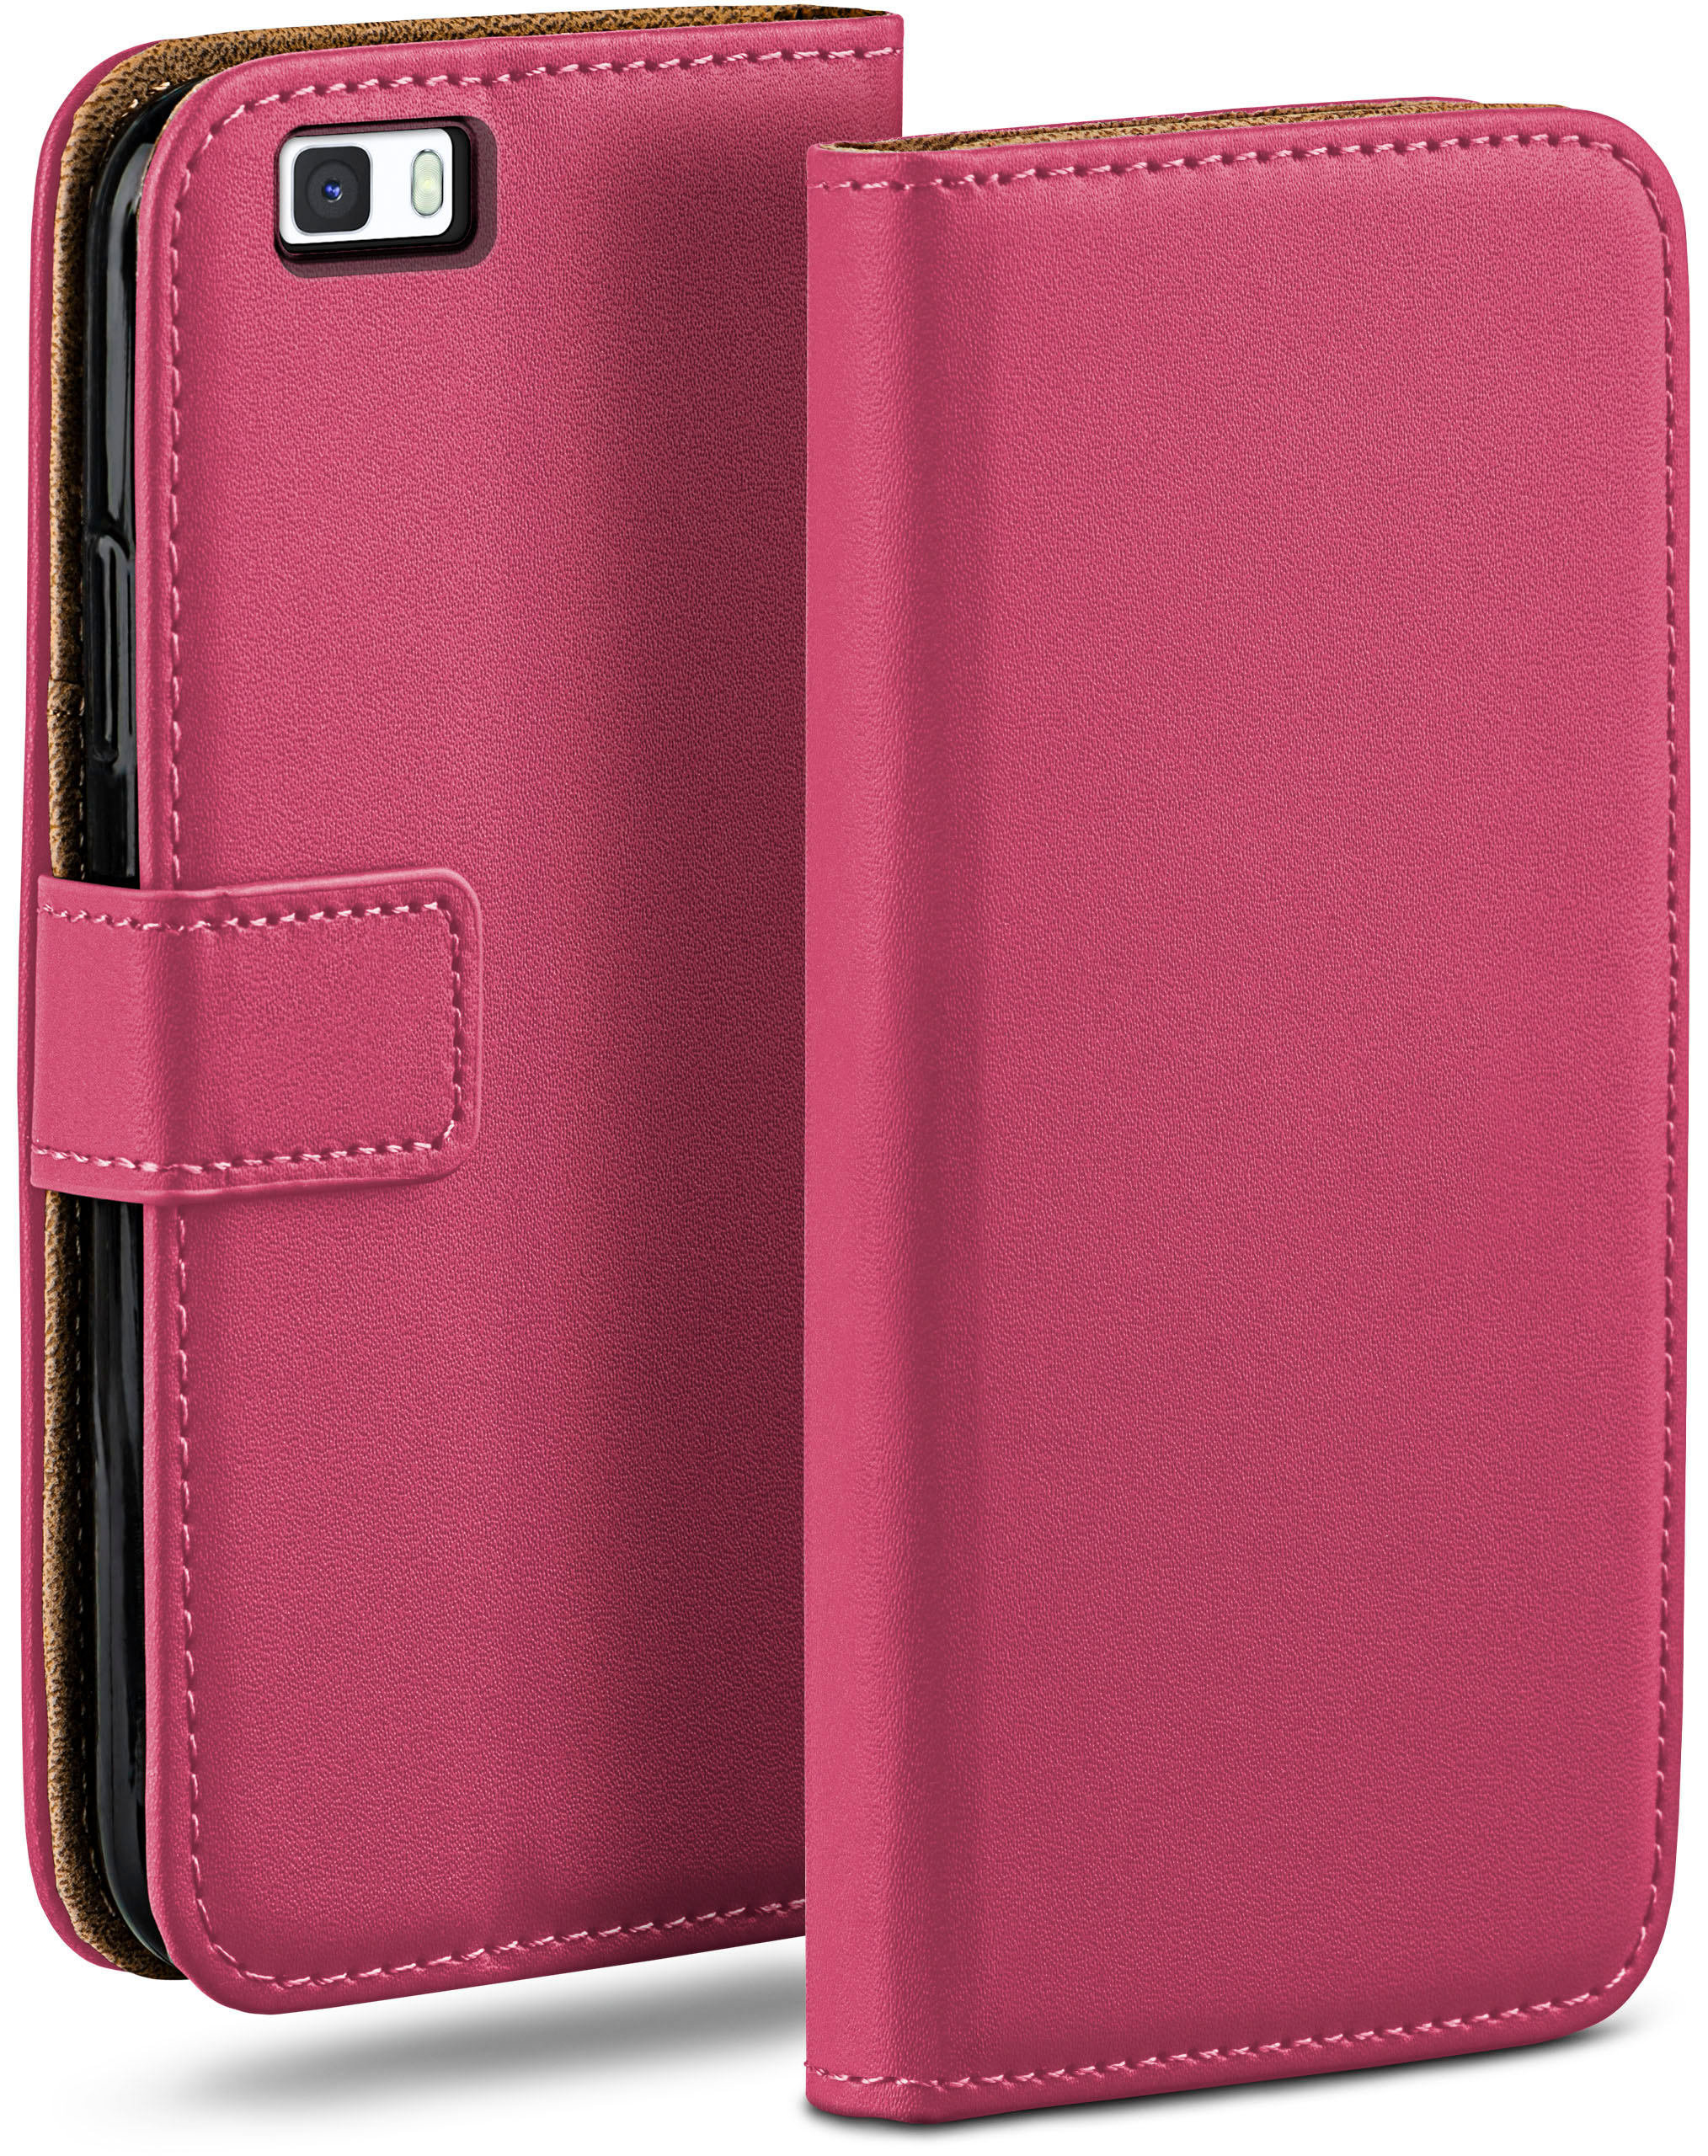 MOEX Book Case, Bookcover, Lite P8 2015, Berry-Fuchsia Huawei